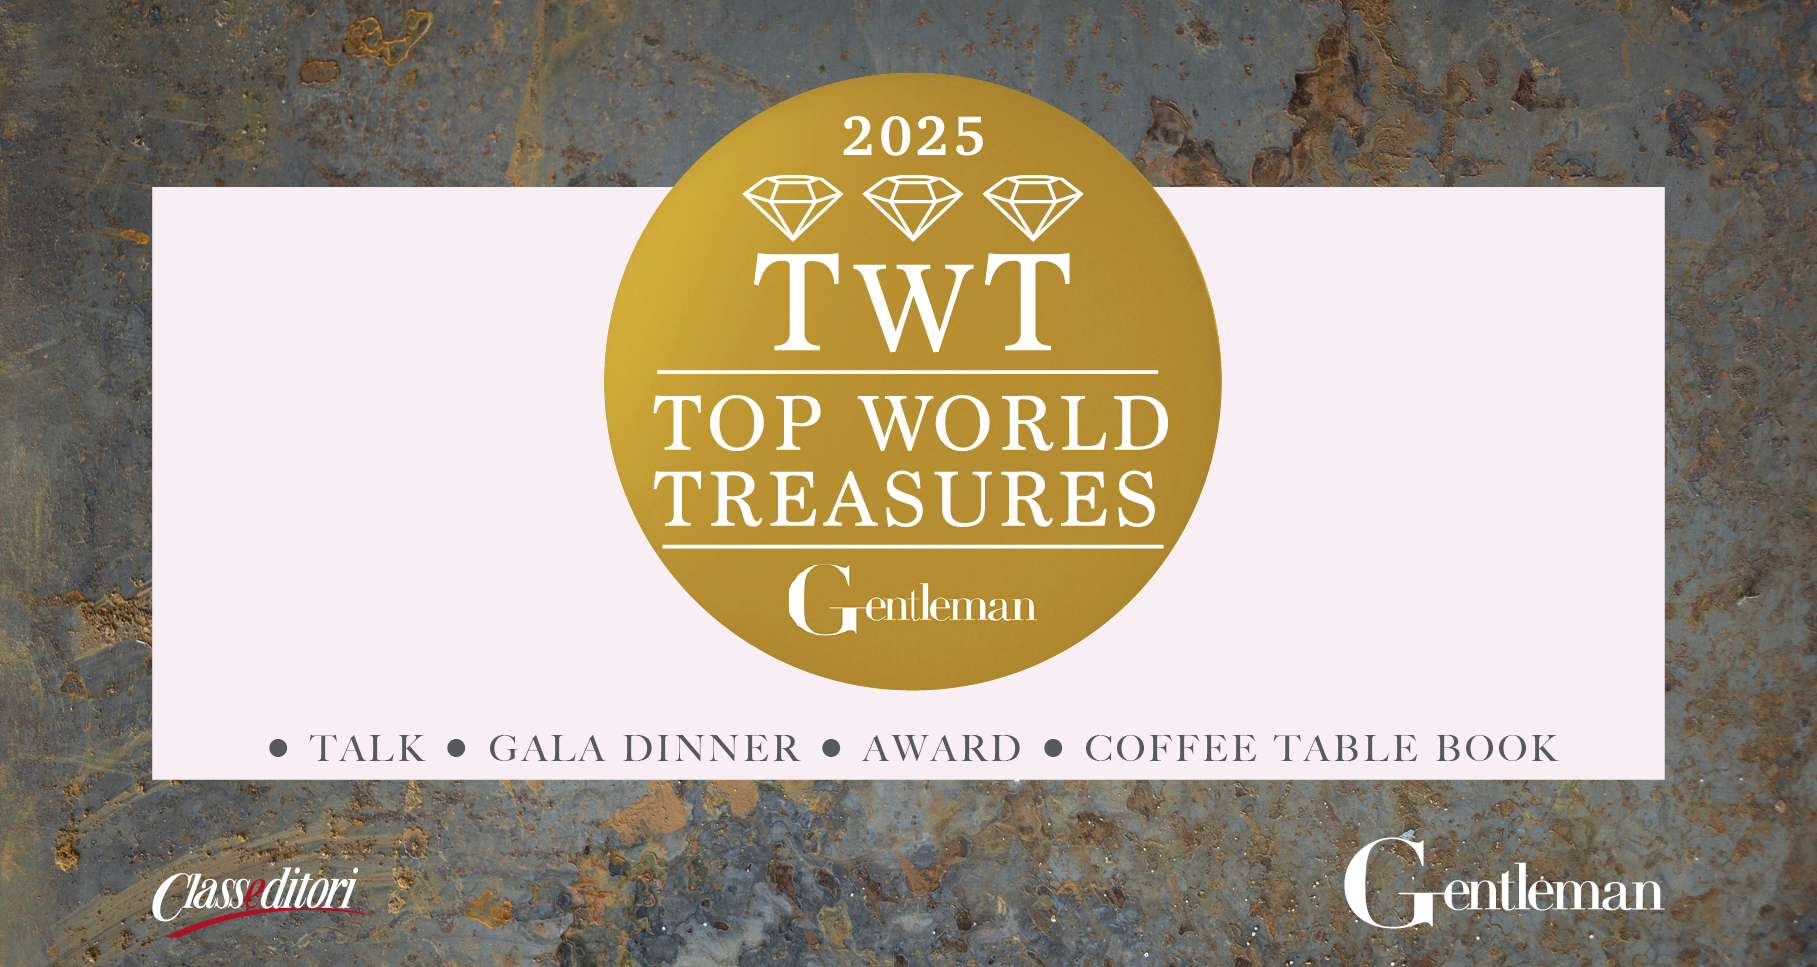 Gentleman TWT - Top World Treasures